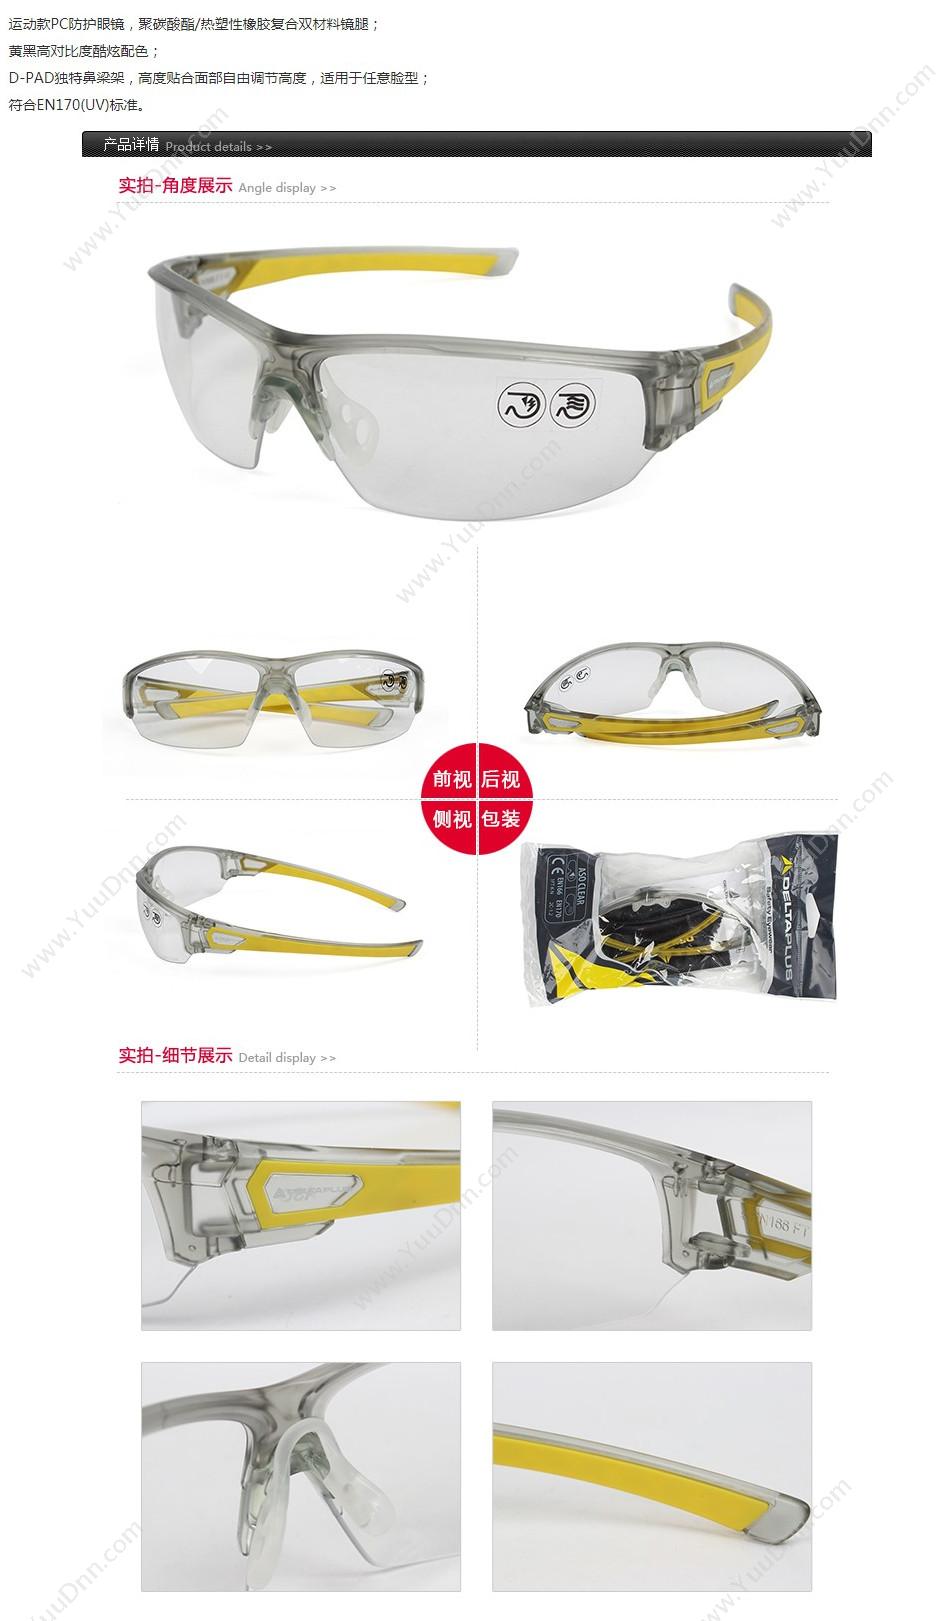 代尔塔 Delta 101150 高视觉D-PAD安全眼镜 ASO CLEAR 透明白色 10个/盒 防雾，防刮擦 防护眼镜